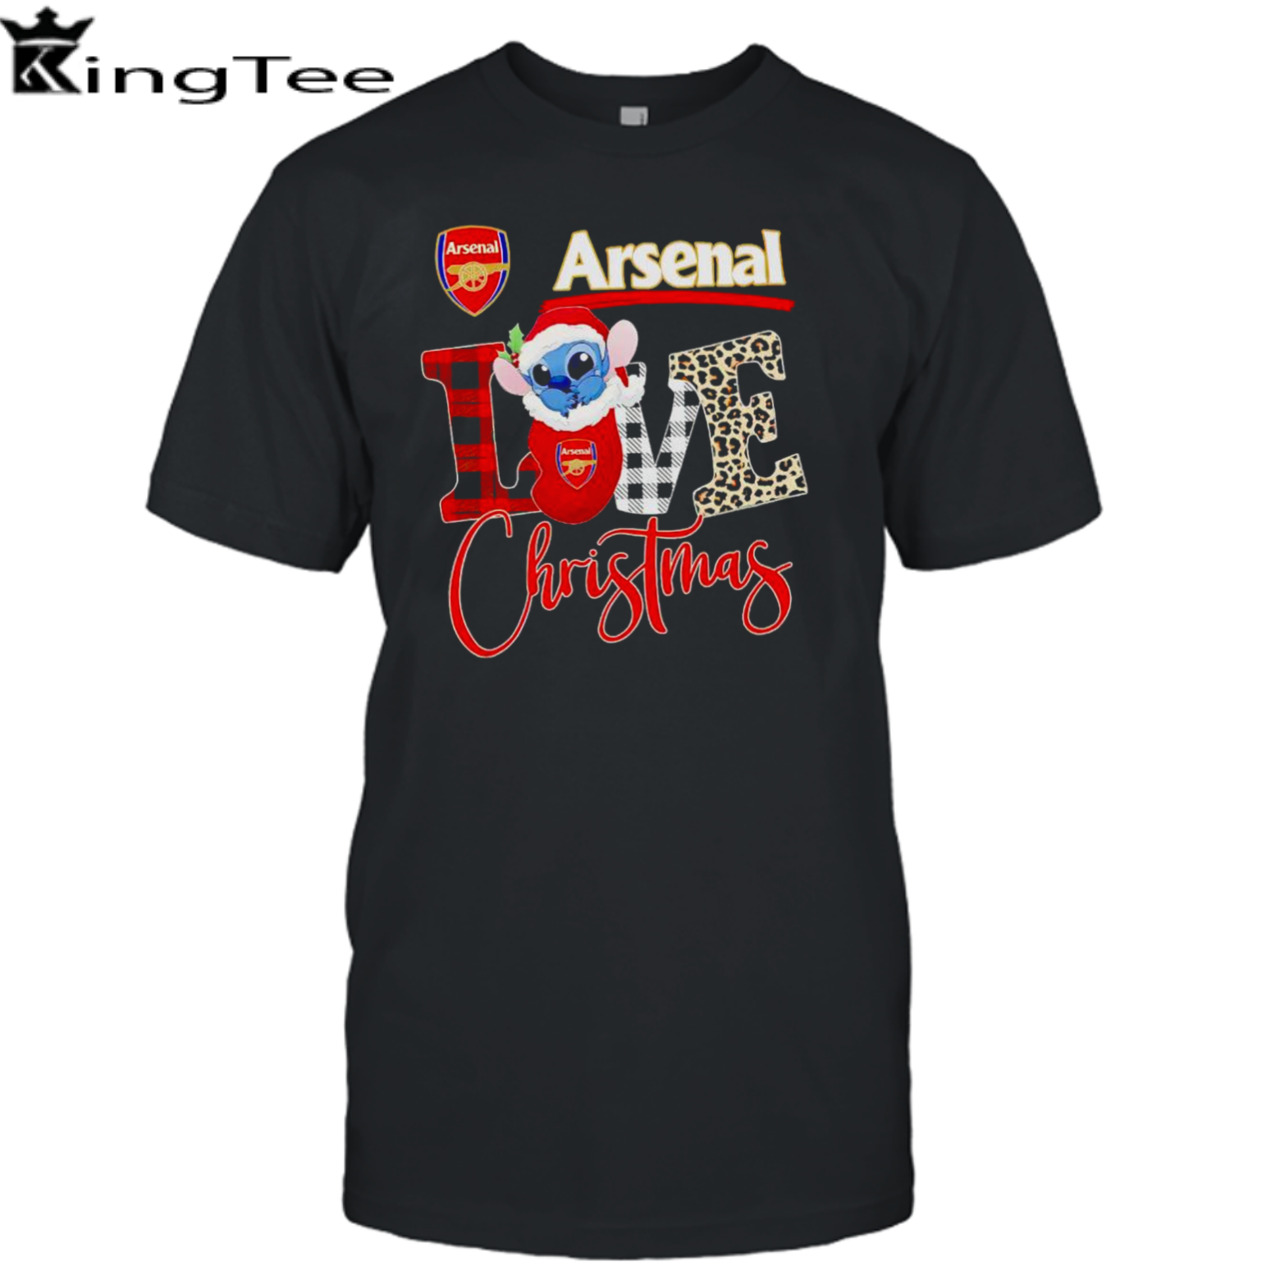 Arsenal Stitch love Christmas shirt